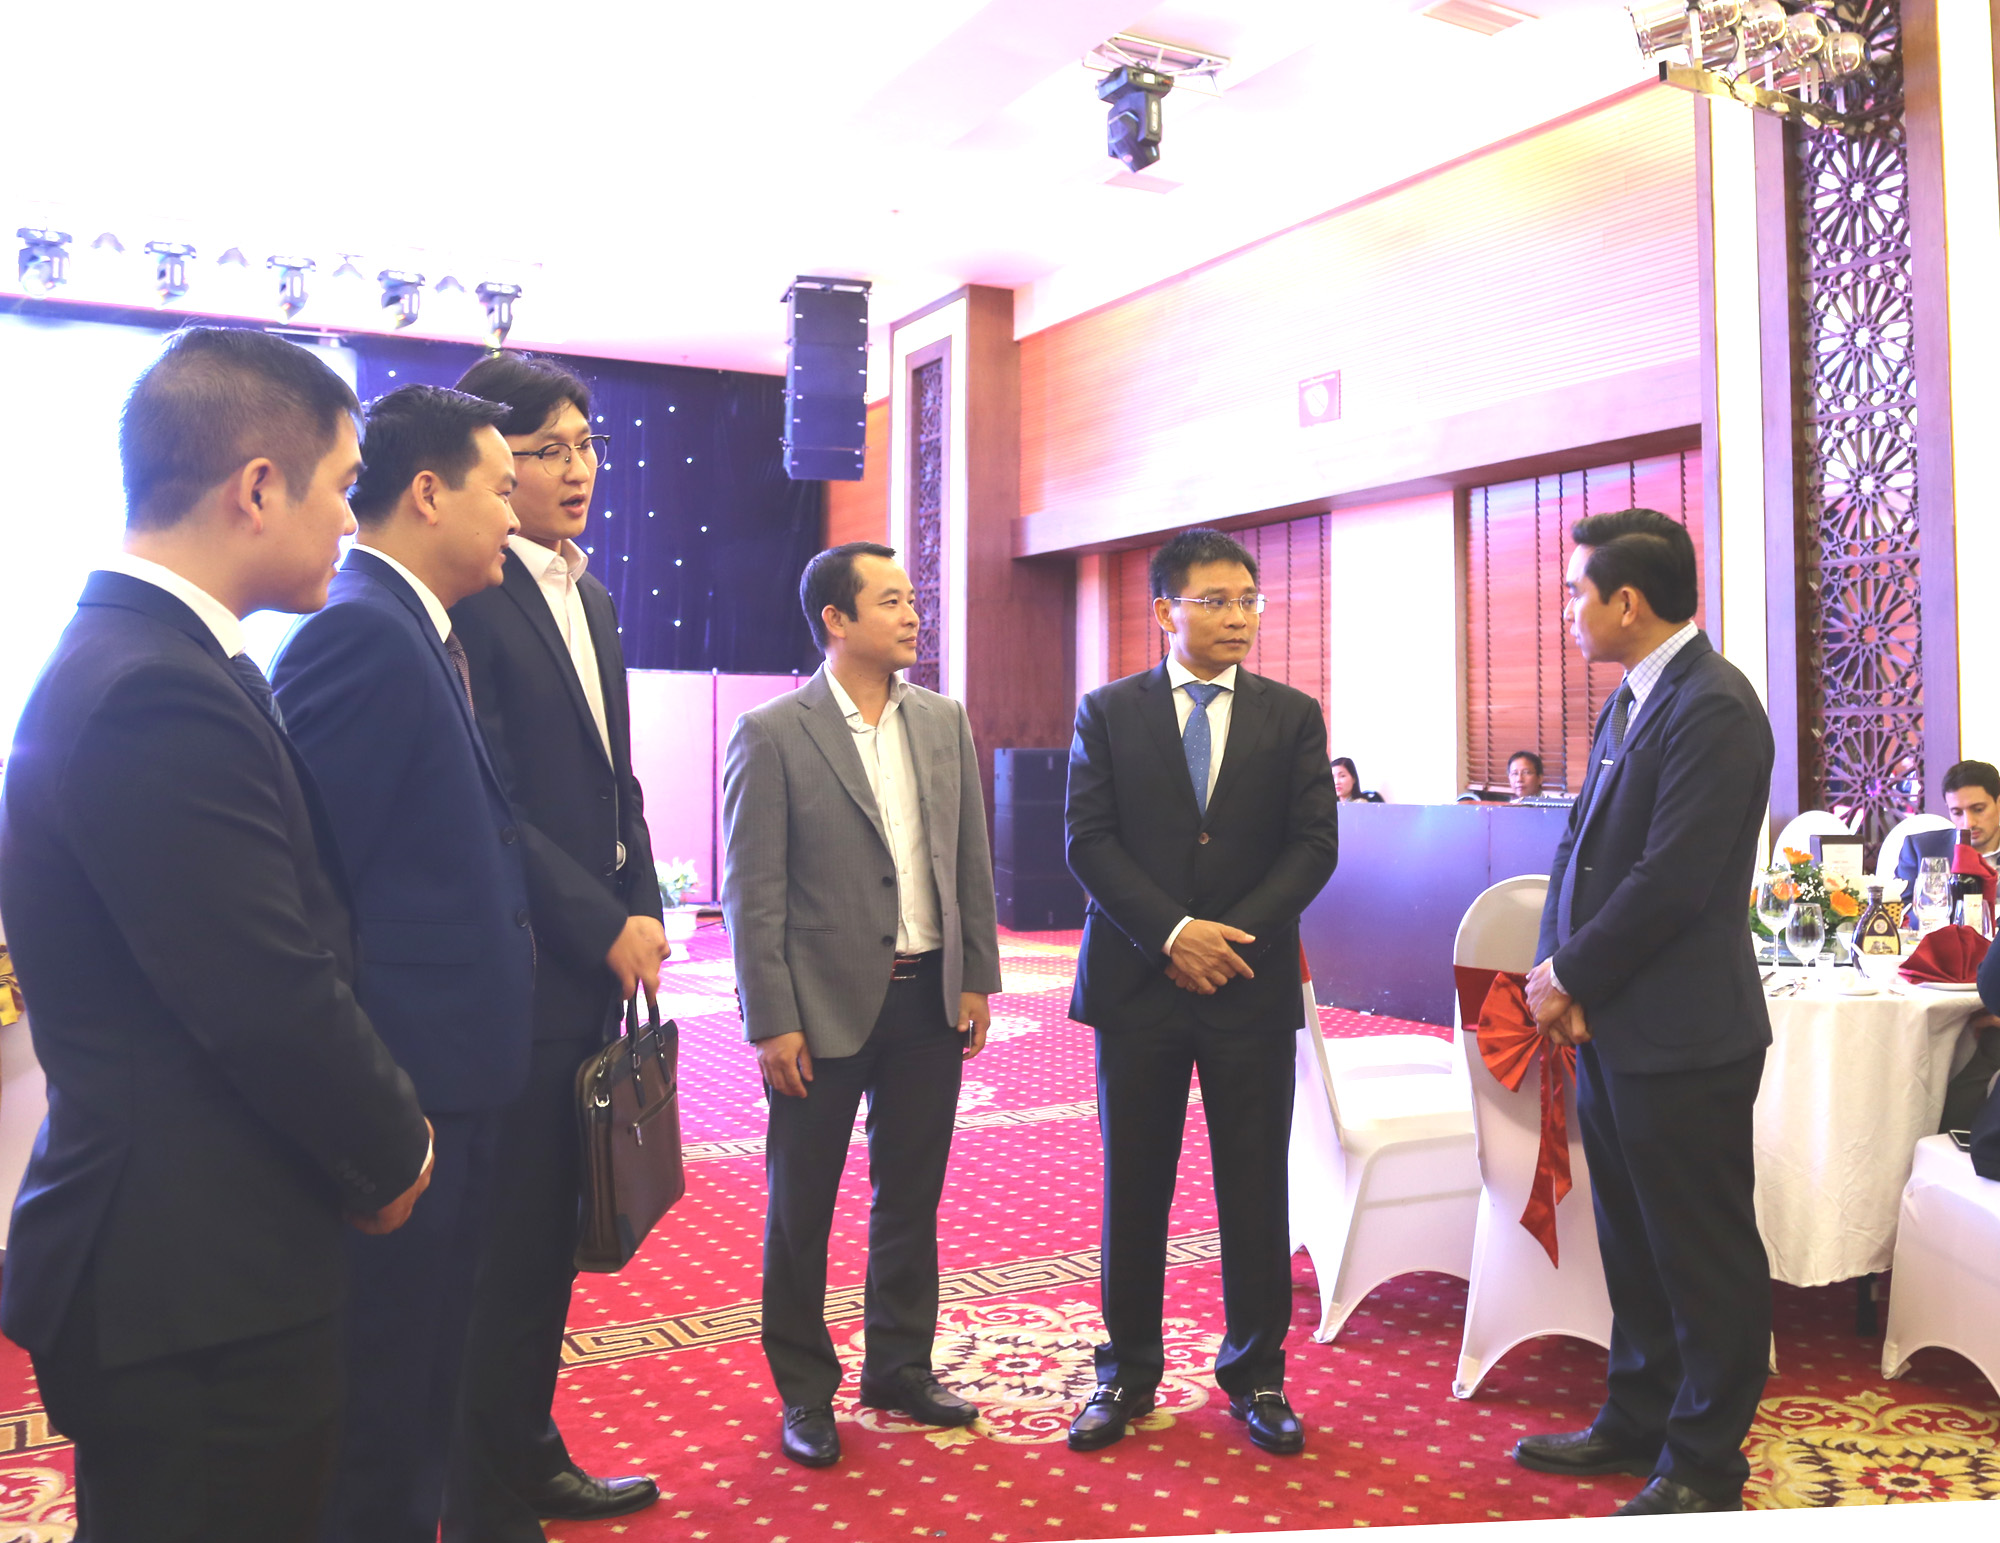 Đồng chí Nguyễn Văn Thắng, Phó Chủ tịch UBND tỉnh, trò chuyện cùng các doanh nghiệp trong và nước ngoài.